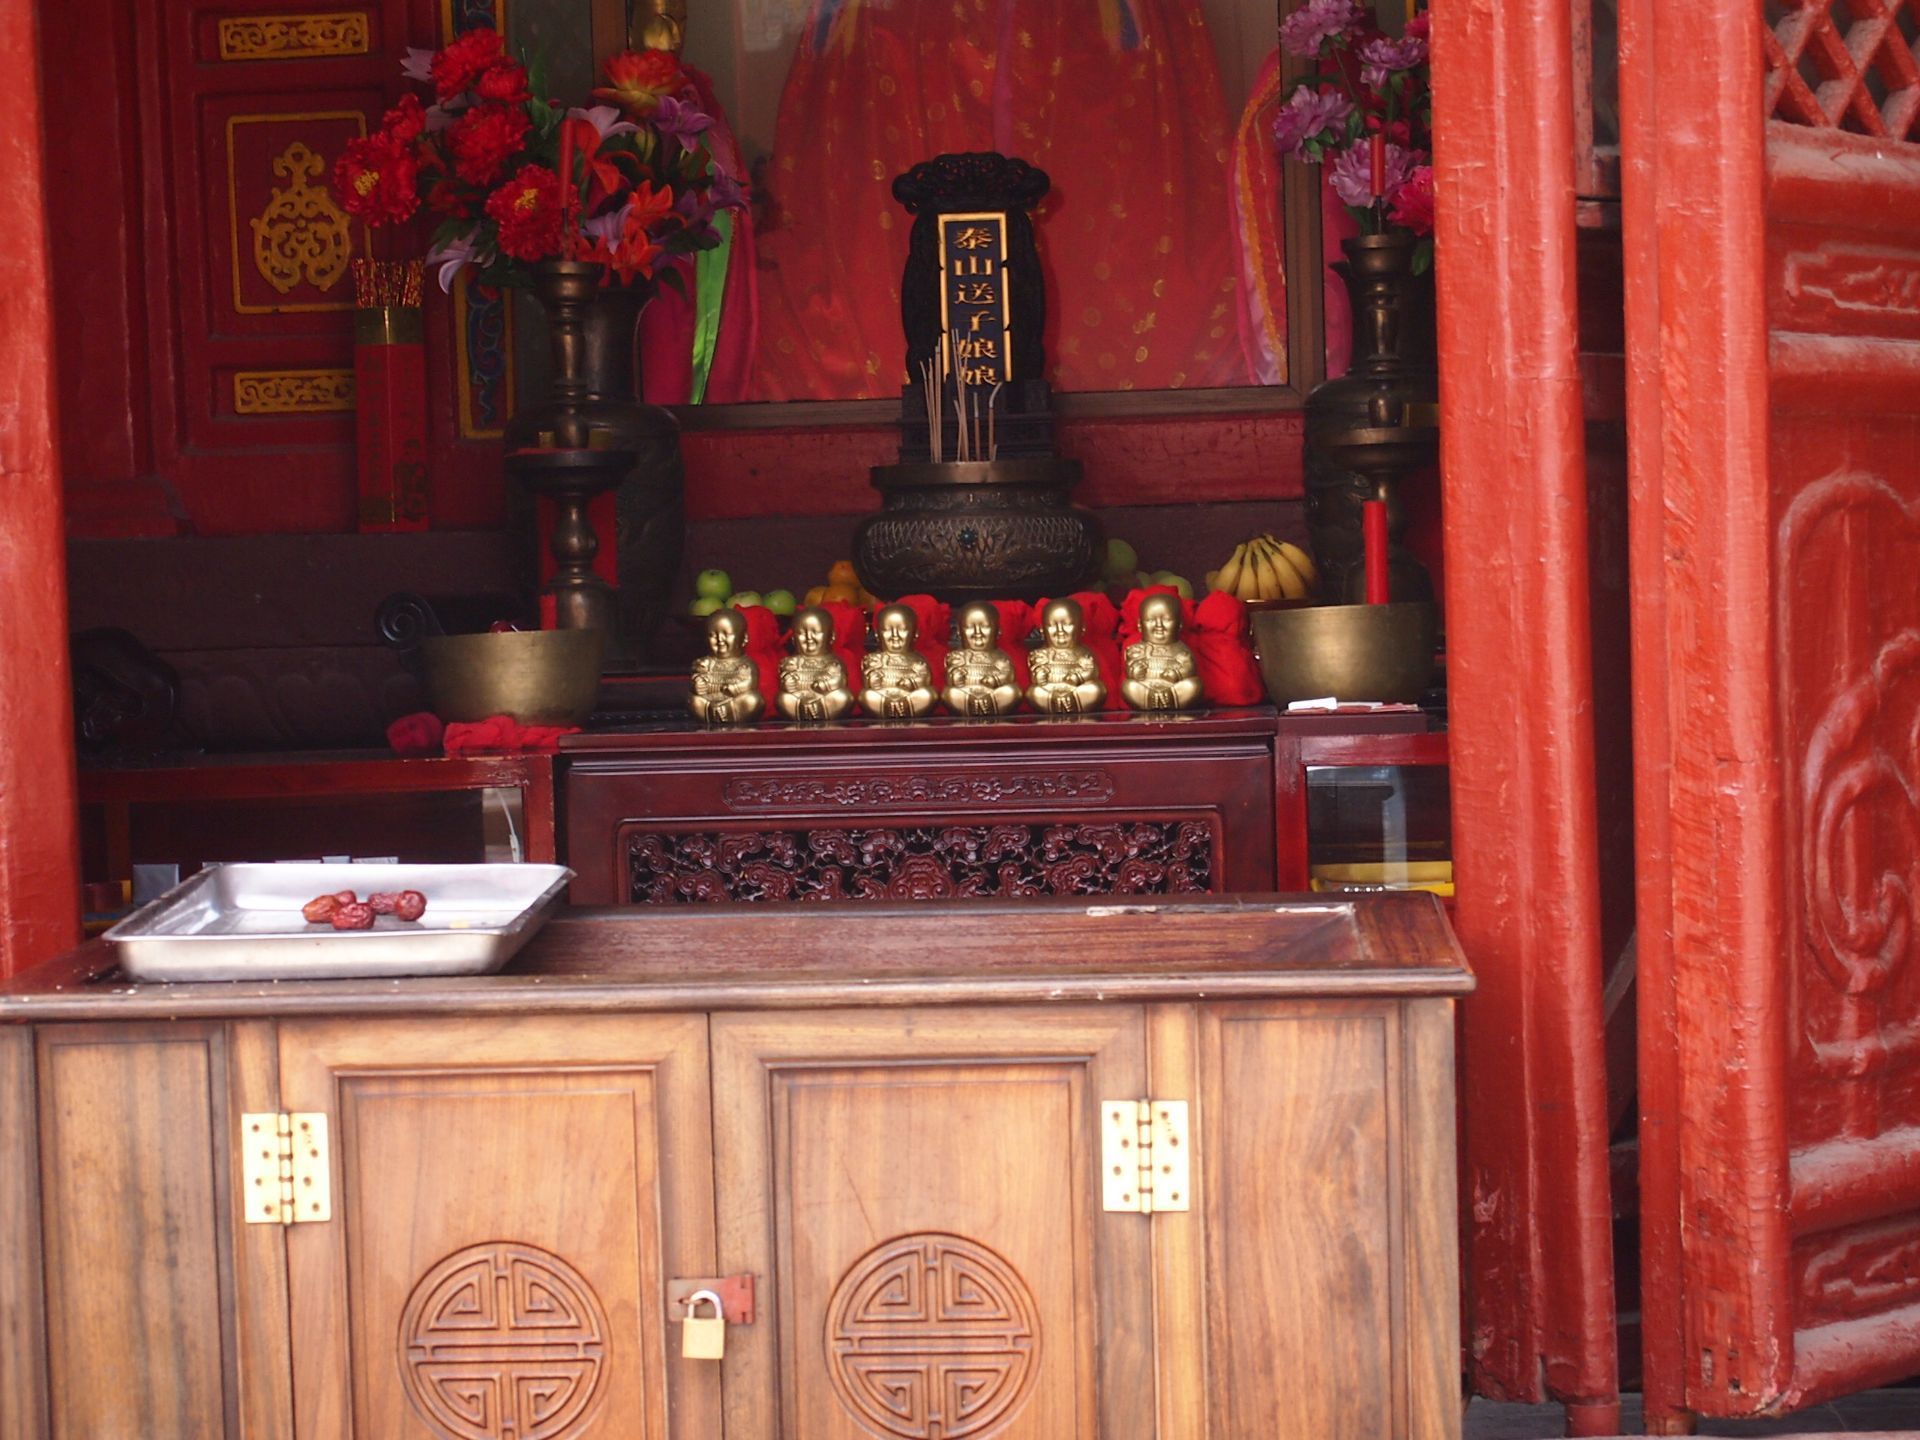 碧霞祠位于泰山岱顶,为泰山女神碧霞元君的祠宇,是道教高山建筑的代表